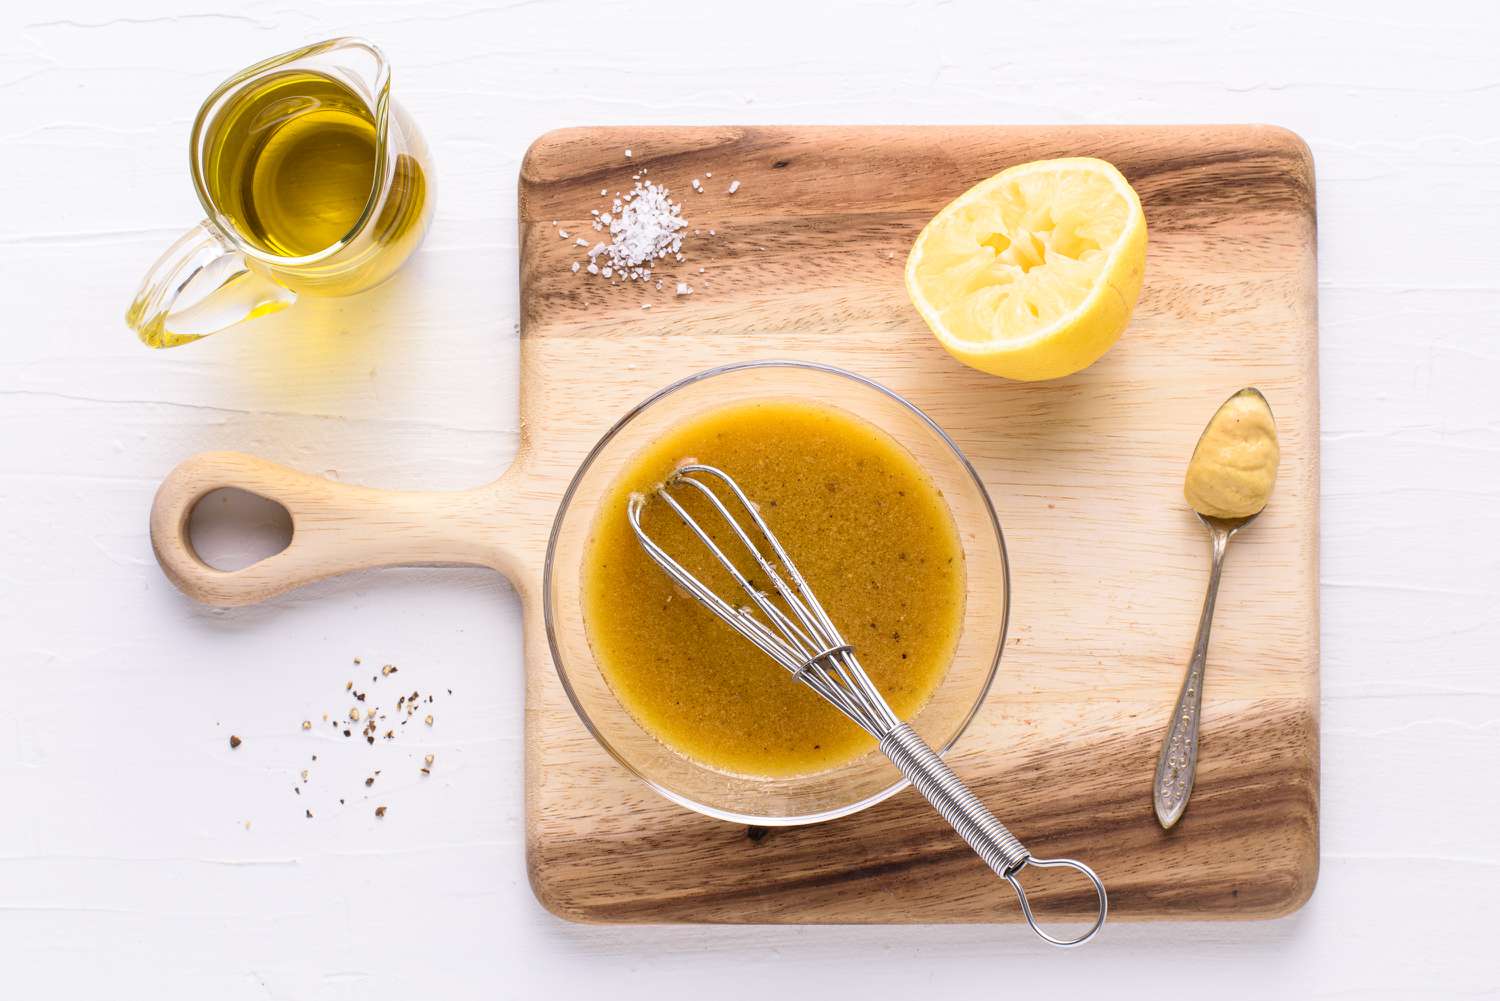 saladedressing recept met olie, kruiden, citroen en mosterd